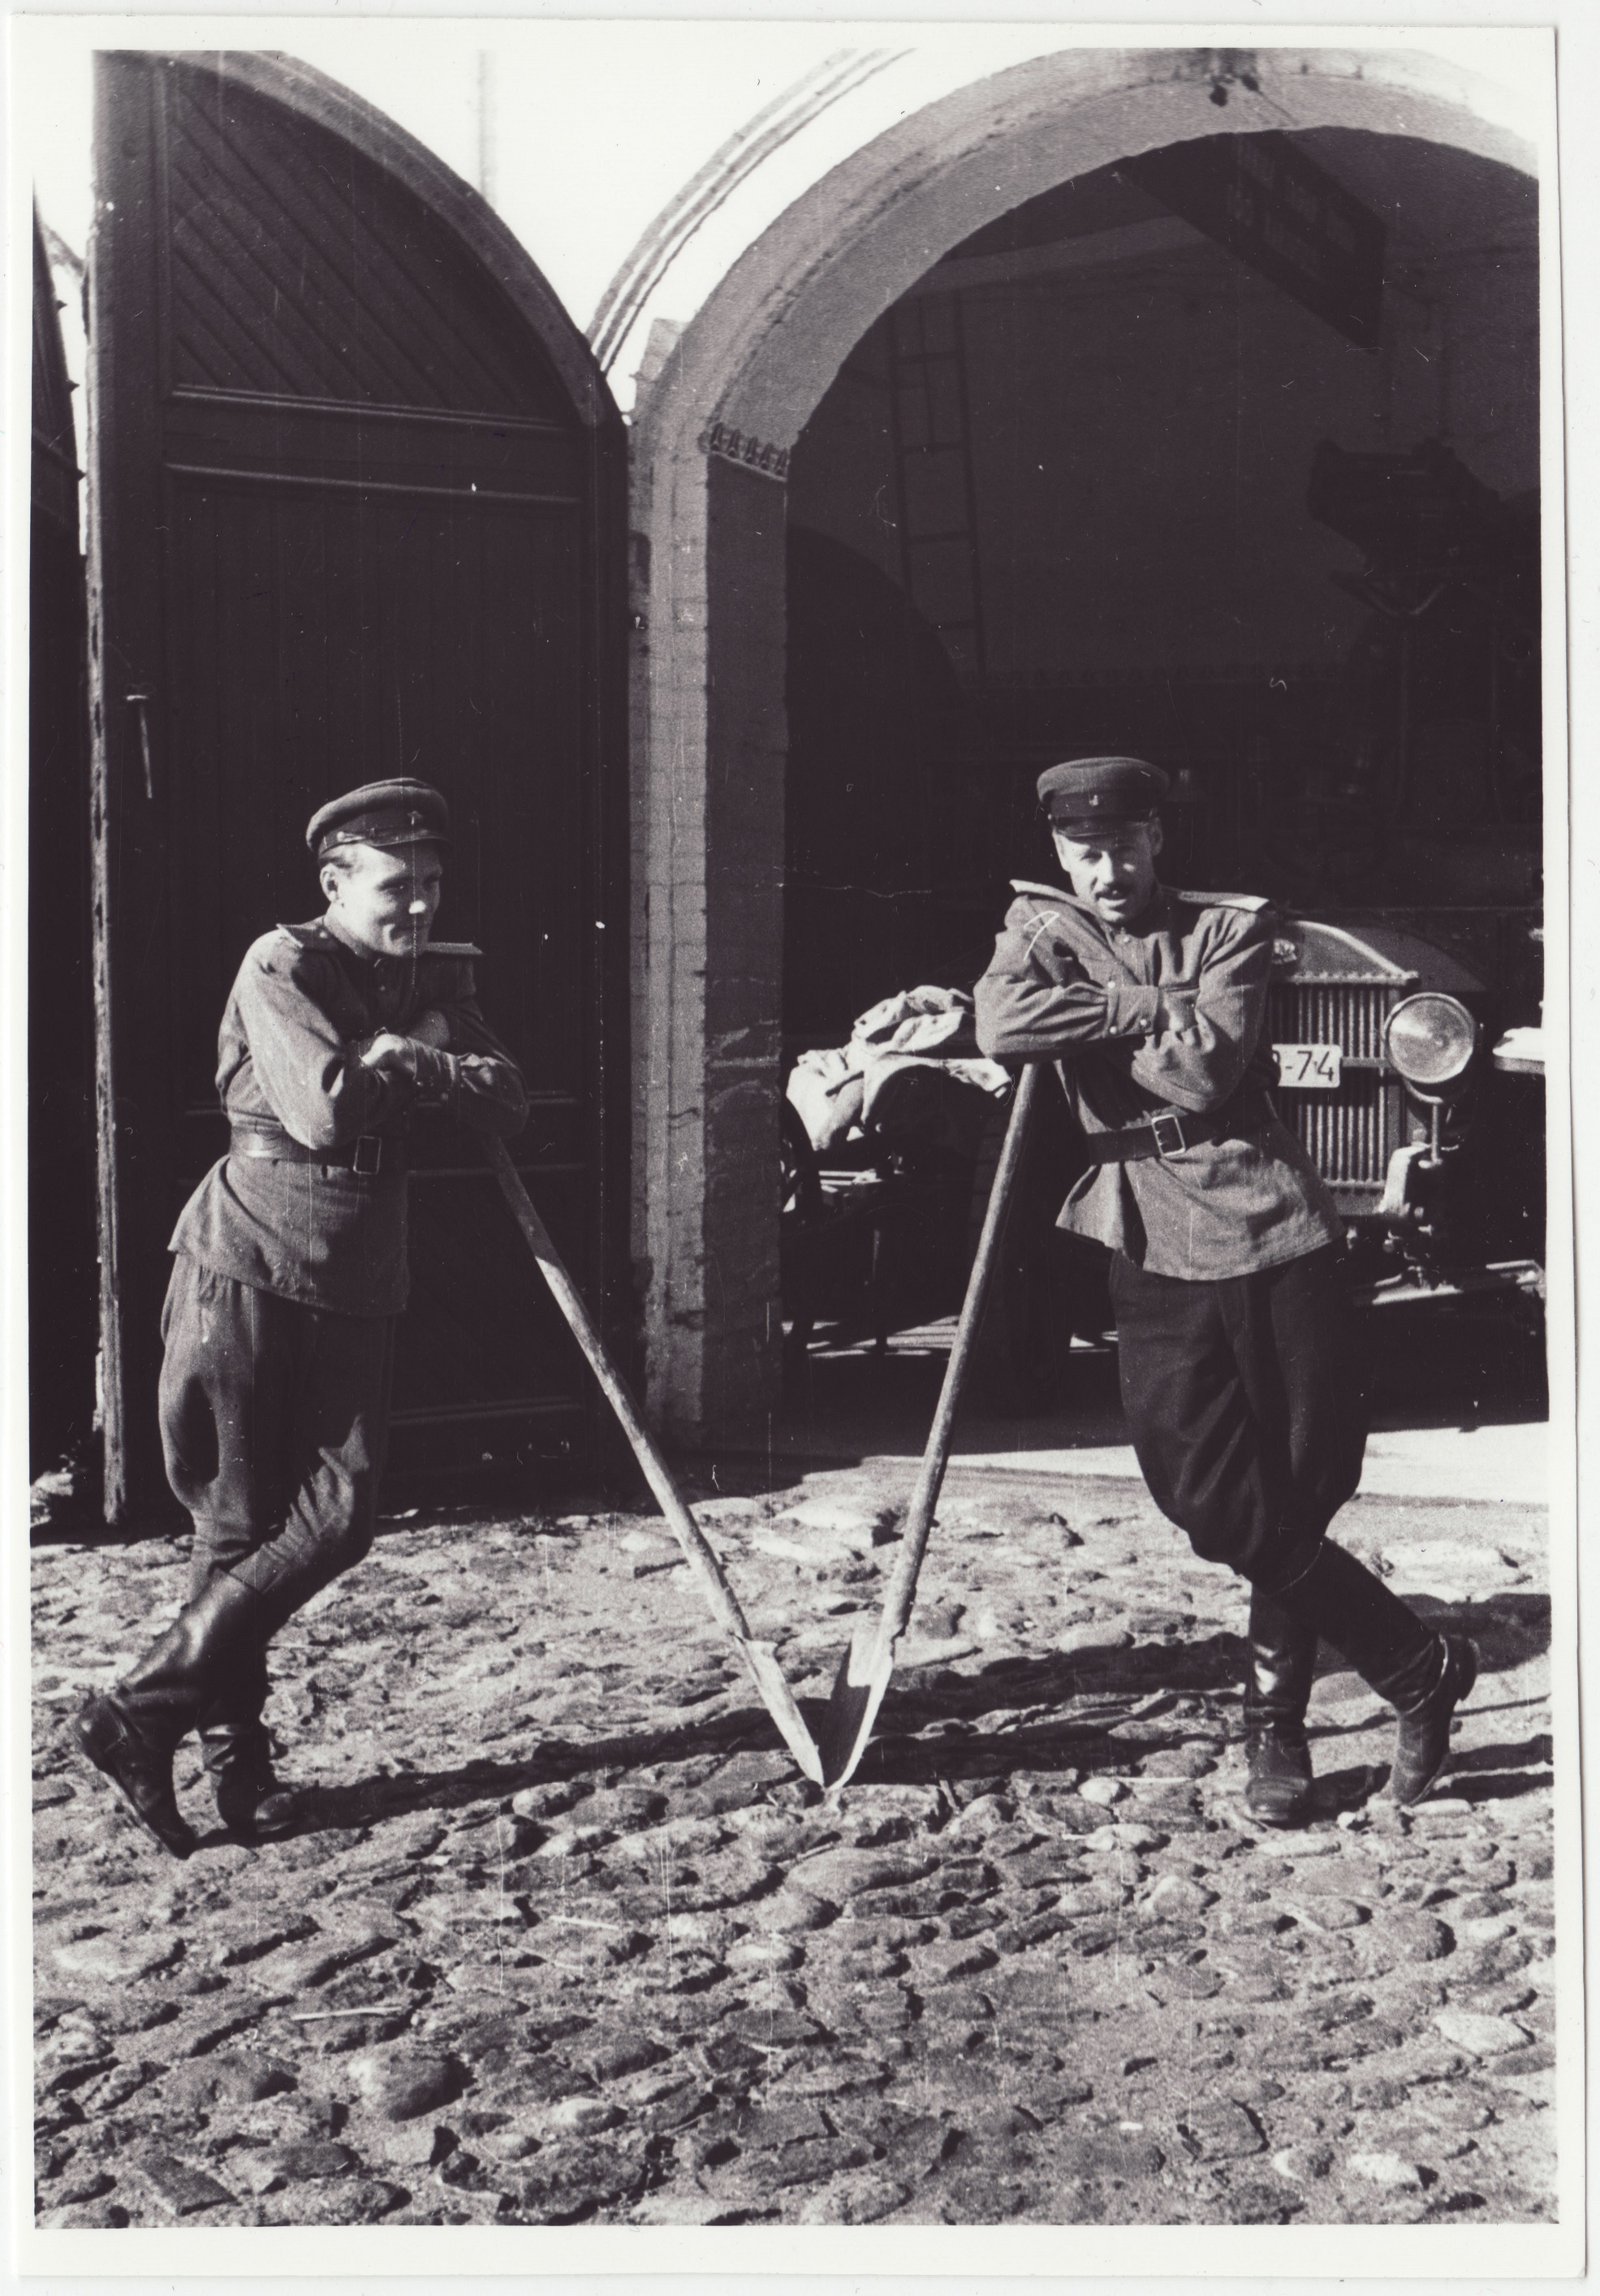 III ÜSTK ruumide remont Ankru tänaval: komandoülem R. Mägi ja tema asetäitja V.-A. Keel labidatele toetamas, 1950.a.